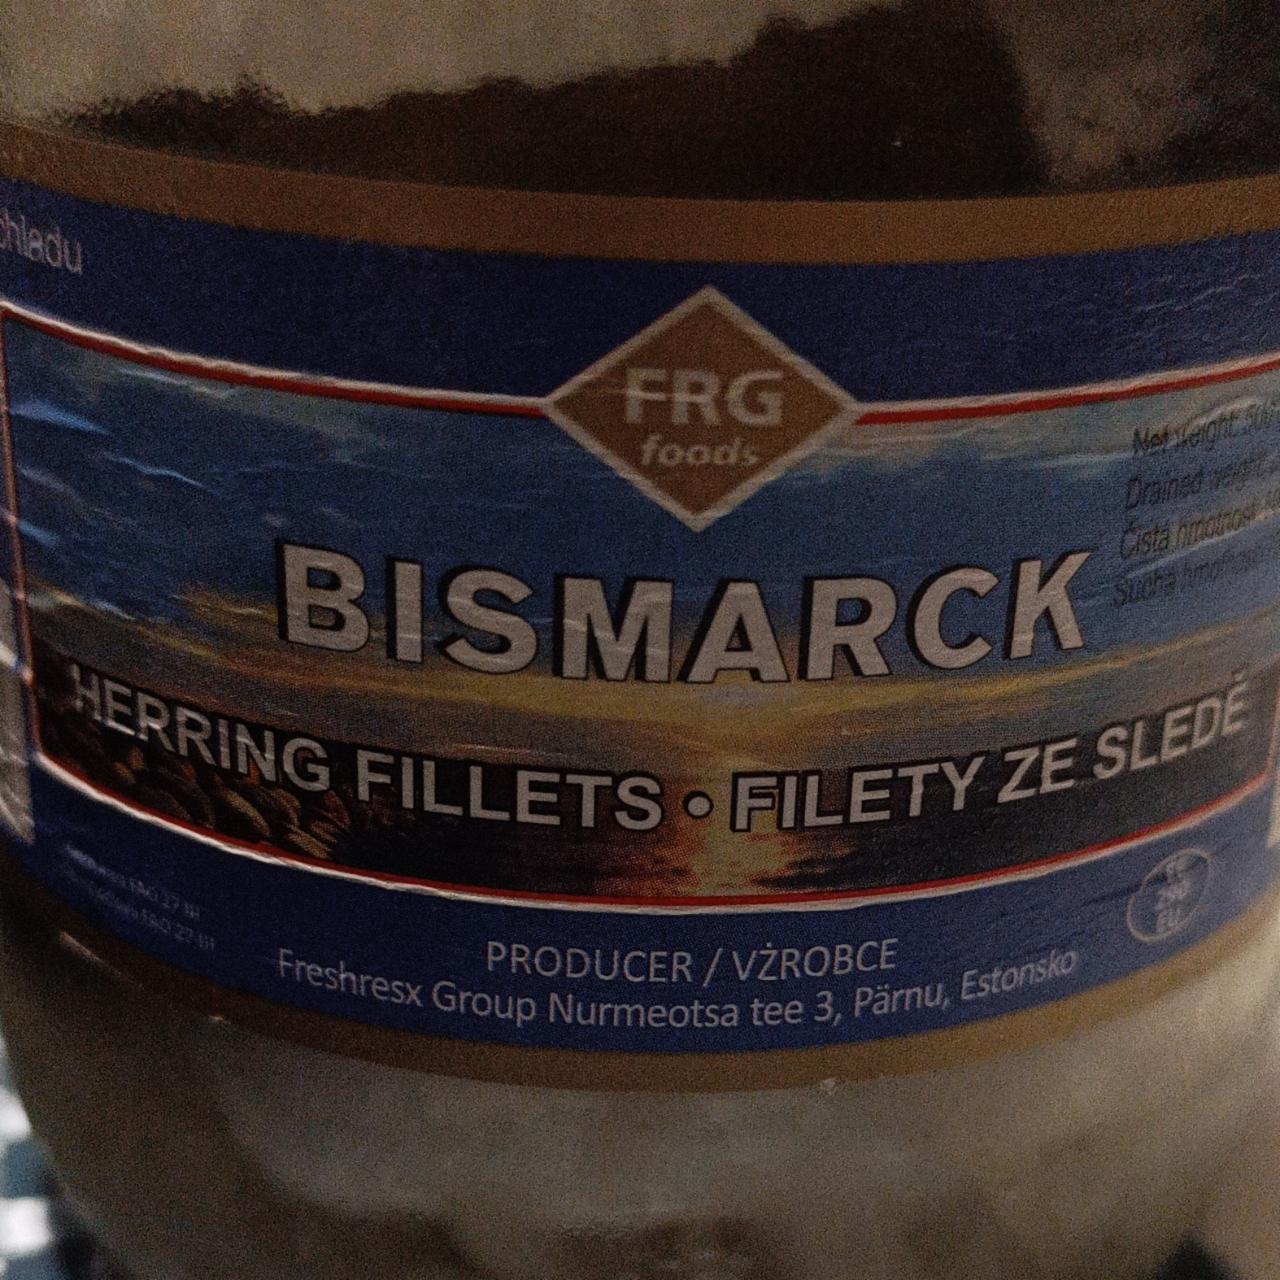 Fotografie - Bismarck Filety ze sledě FRG food